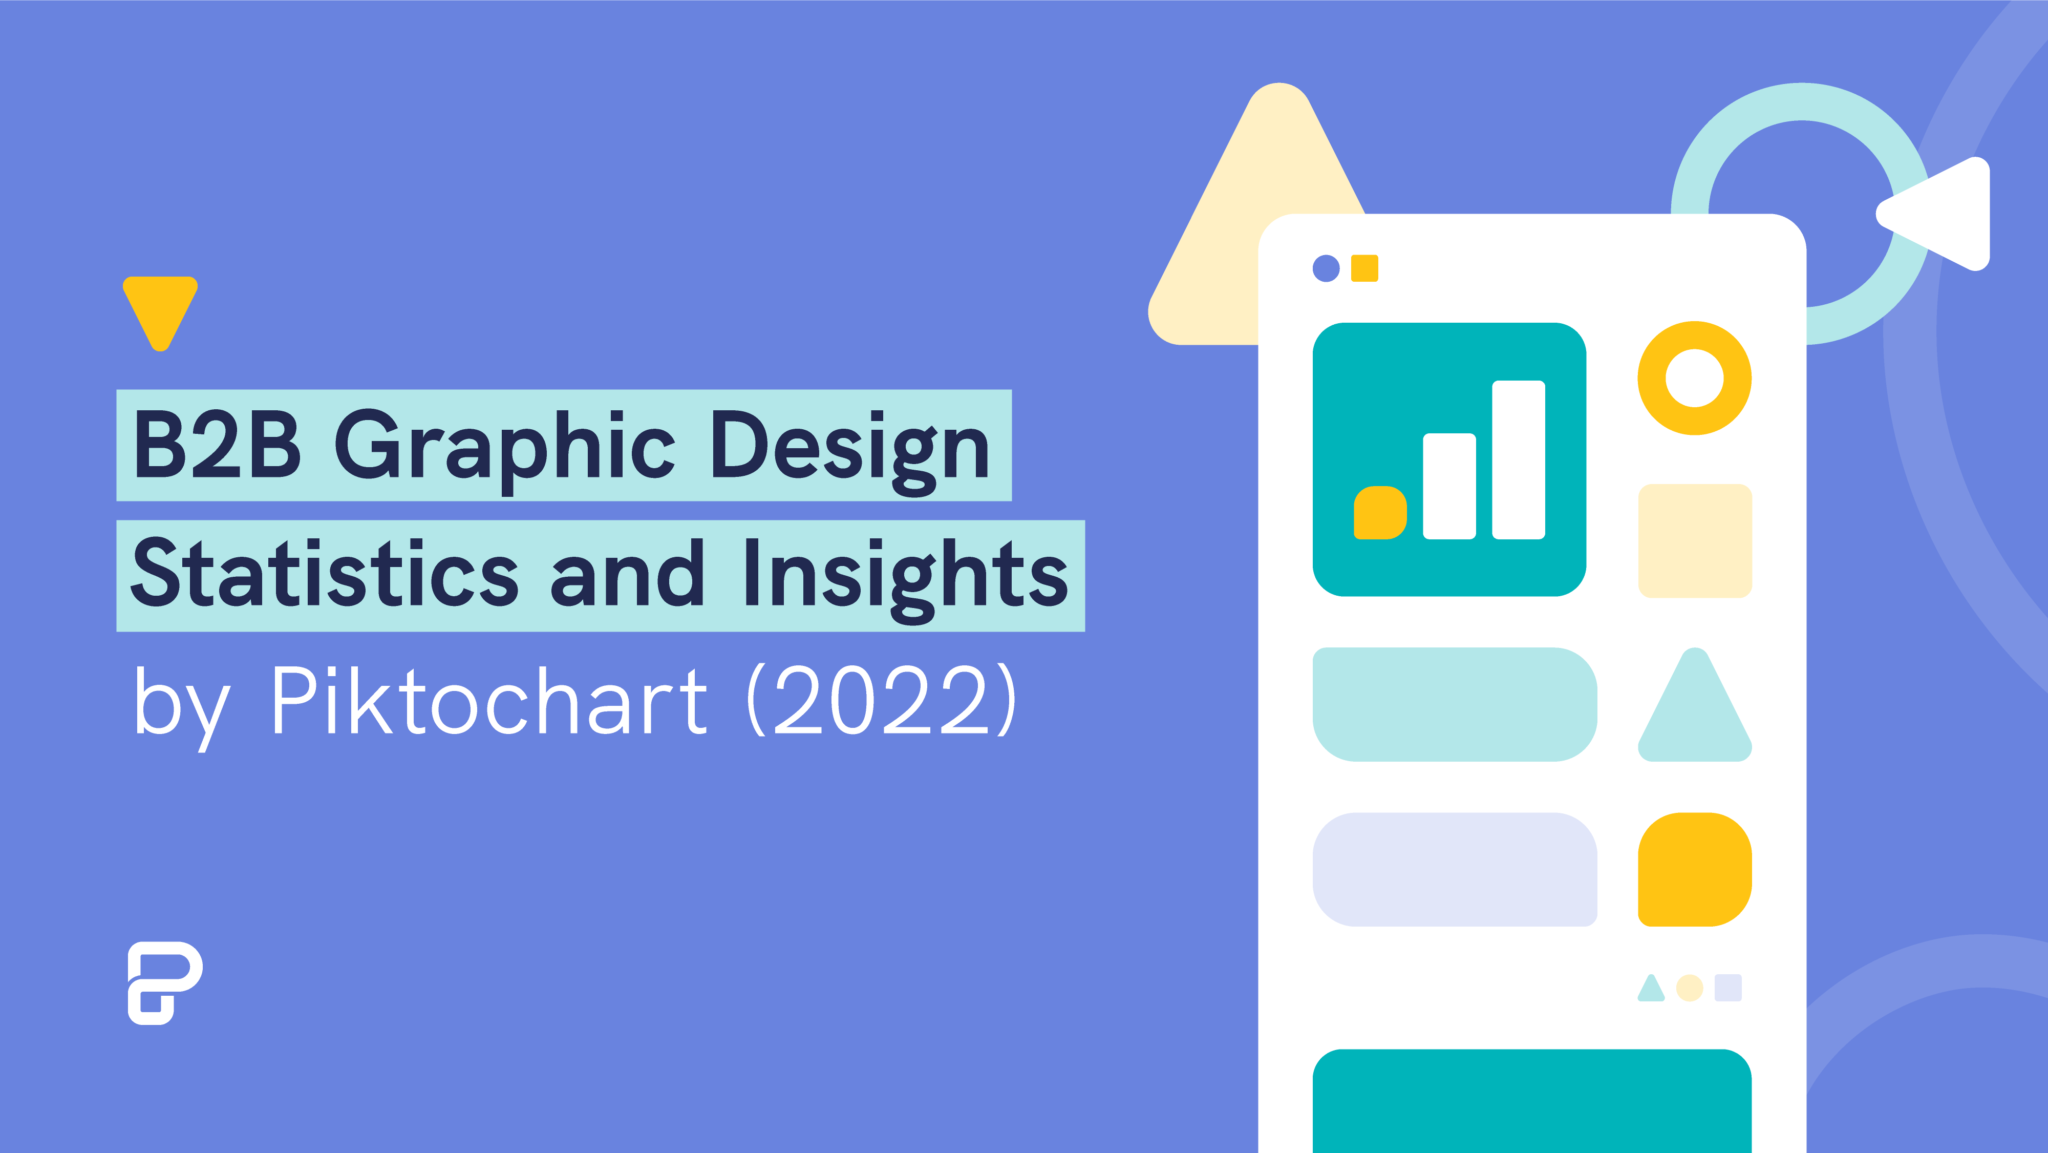 featured image of graphic design statistics